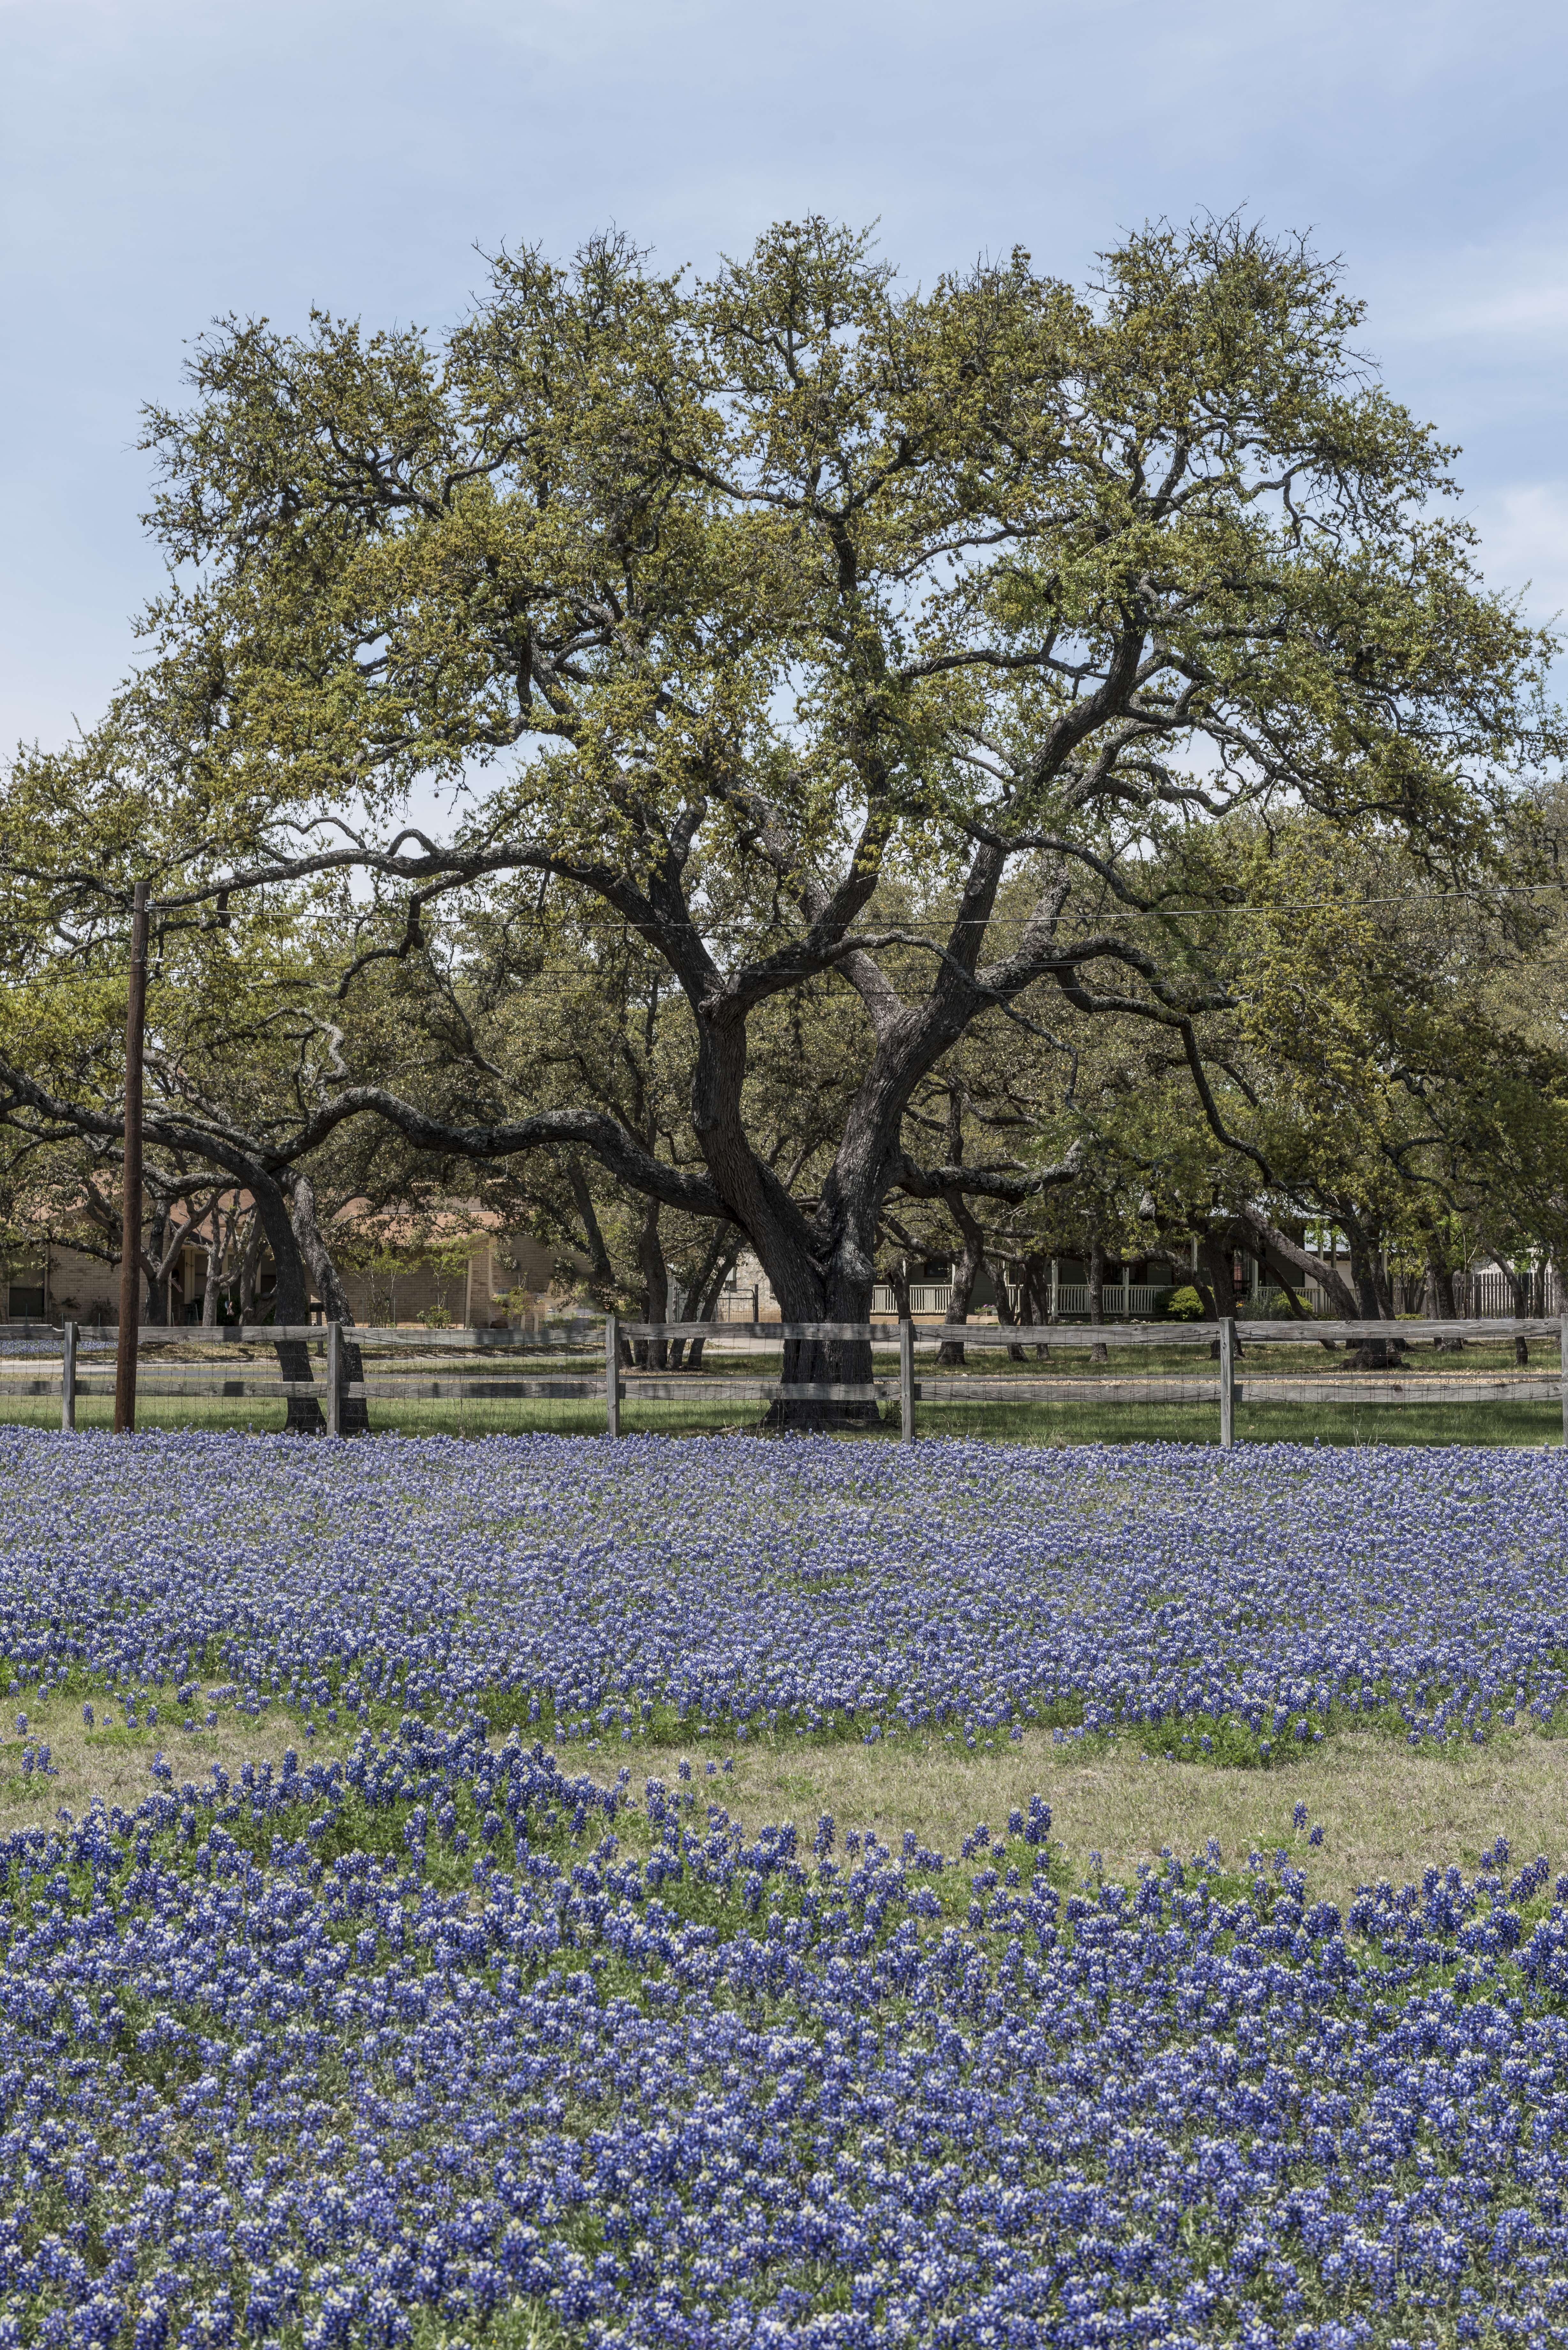 Image of Texas lupine